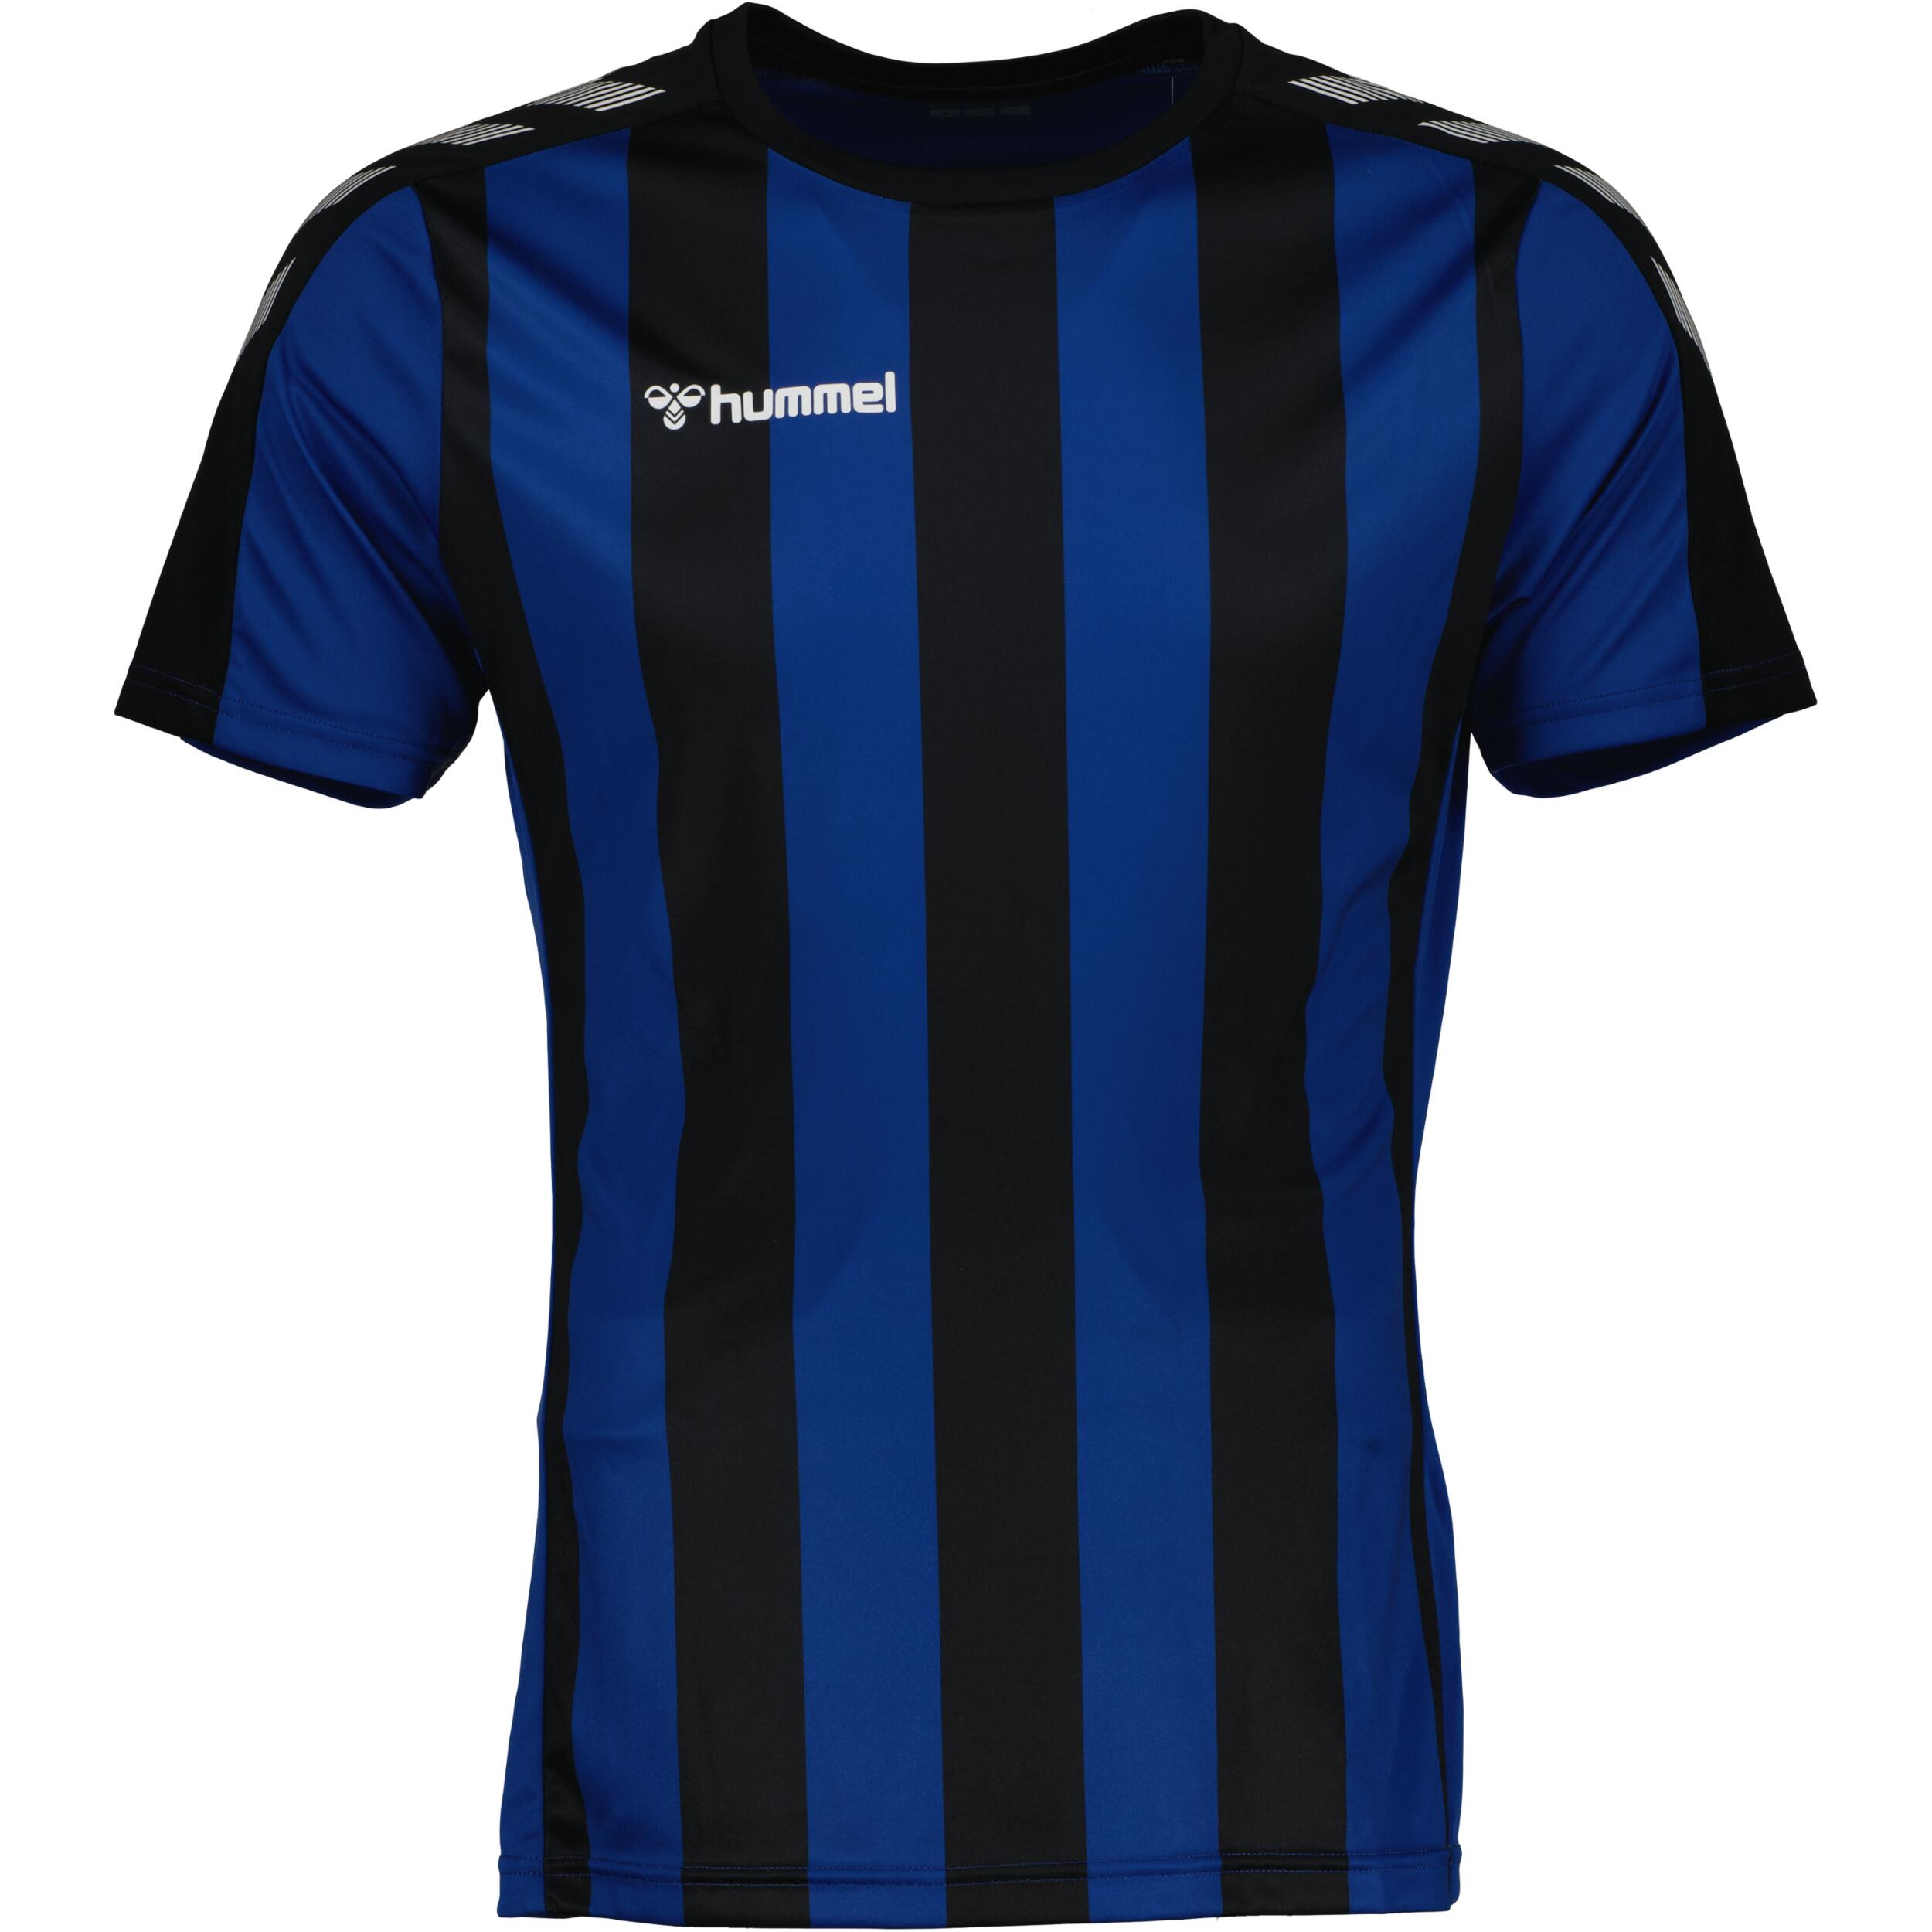 Stripe jersey for kids, great for football, in black/true blue 1/3